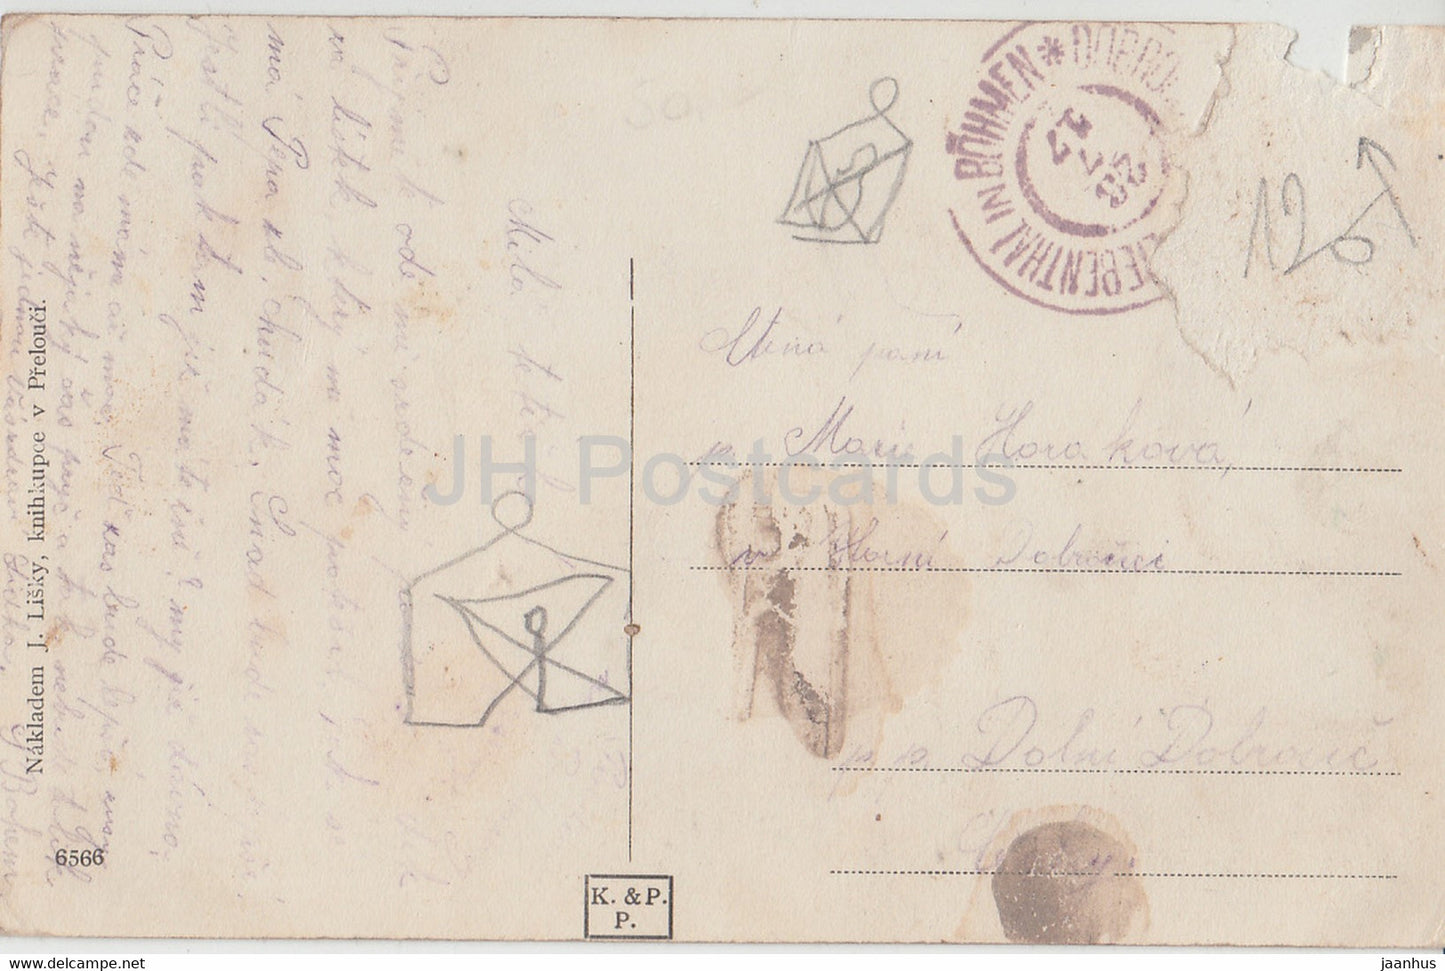 Vyrov - carte postale ancienne - 1917 - République tchèque - utilisé